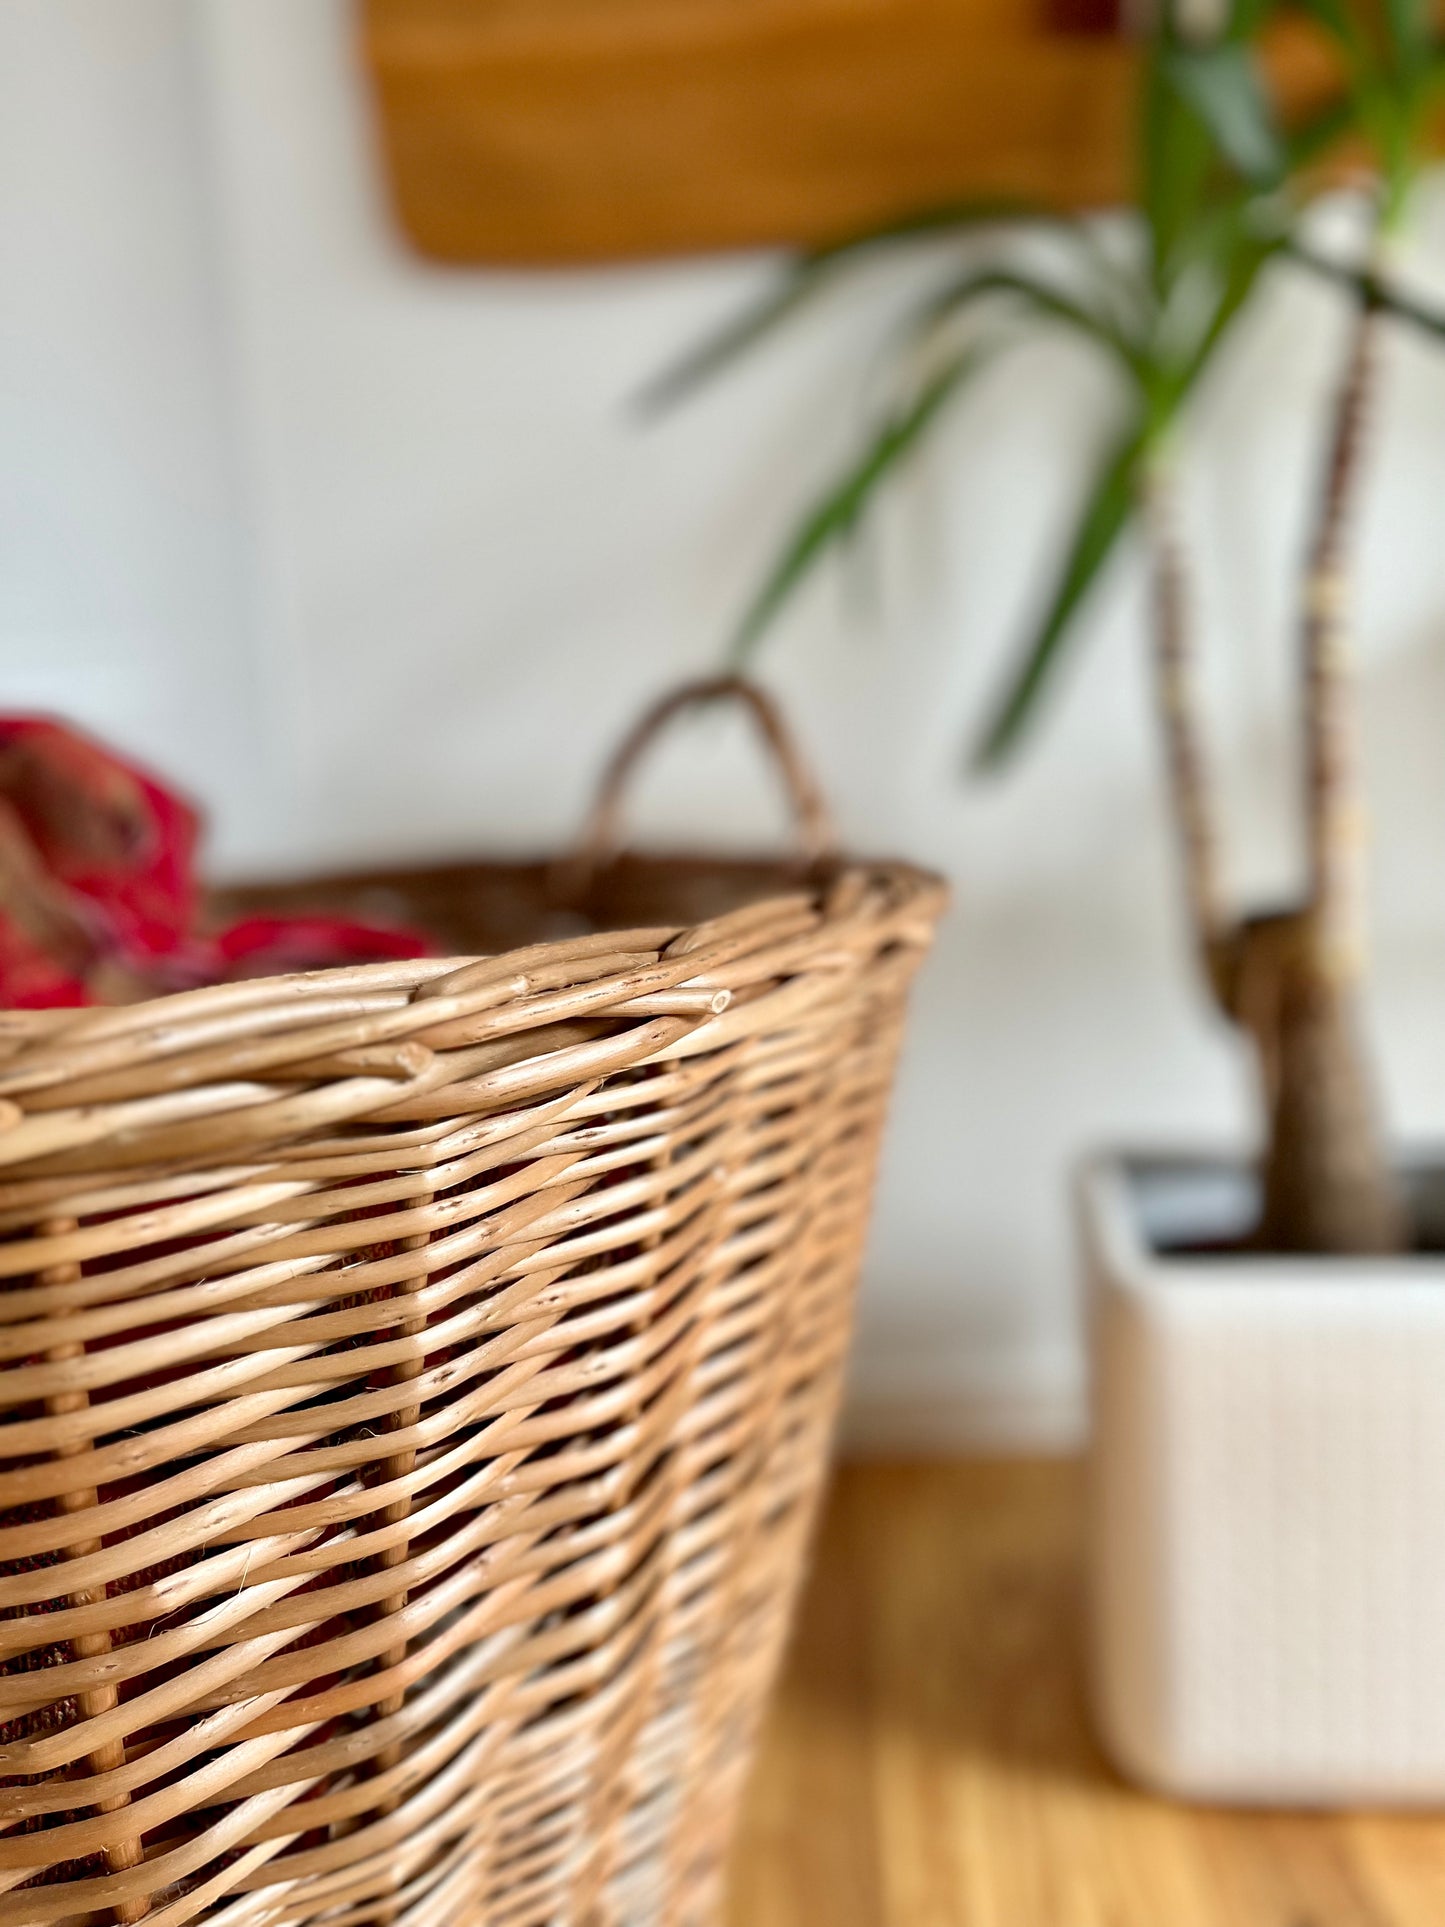 ESTANCIA rattan basket (see delivery below)